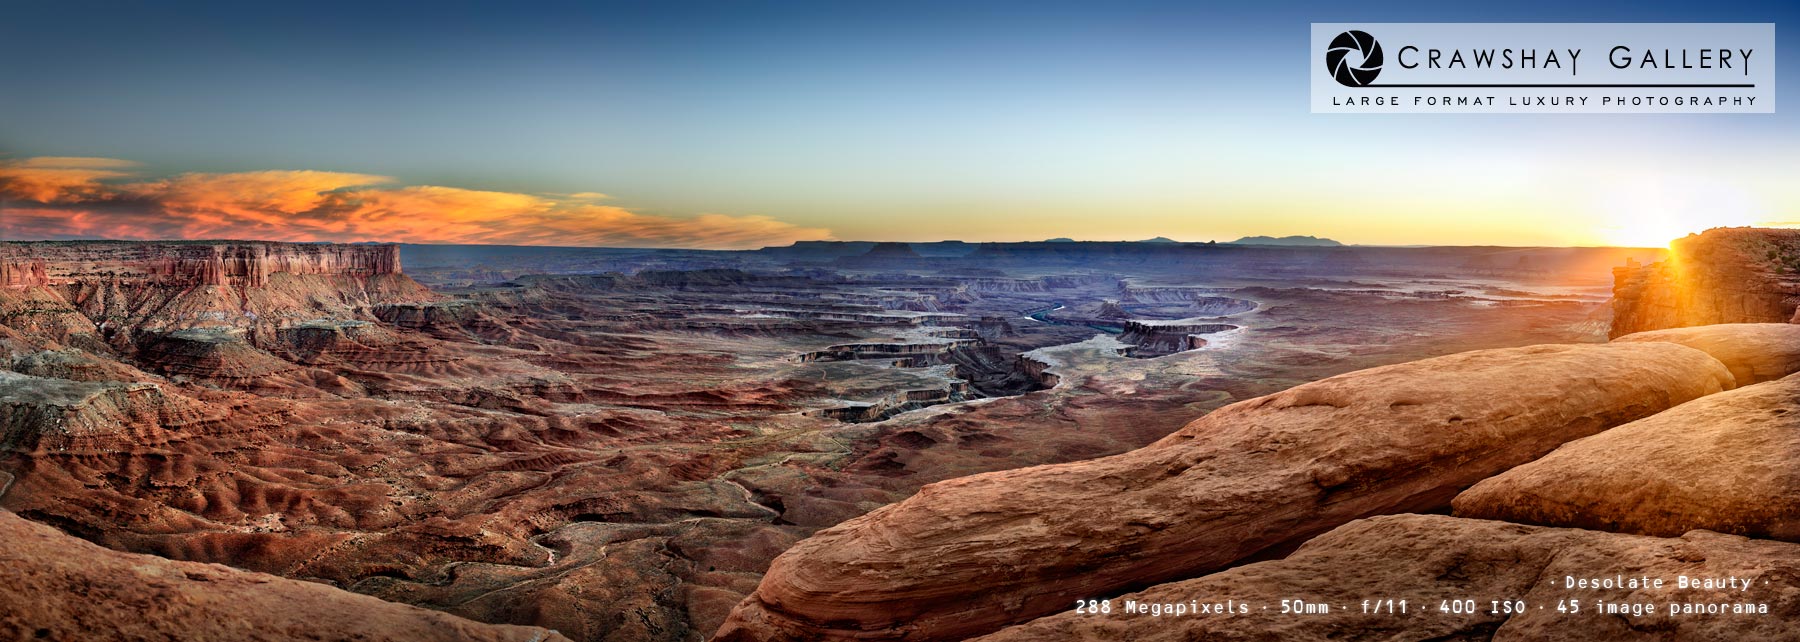 Image of Canyonlands Sunset